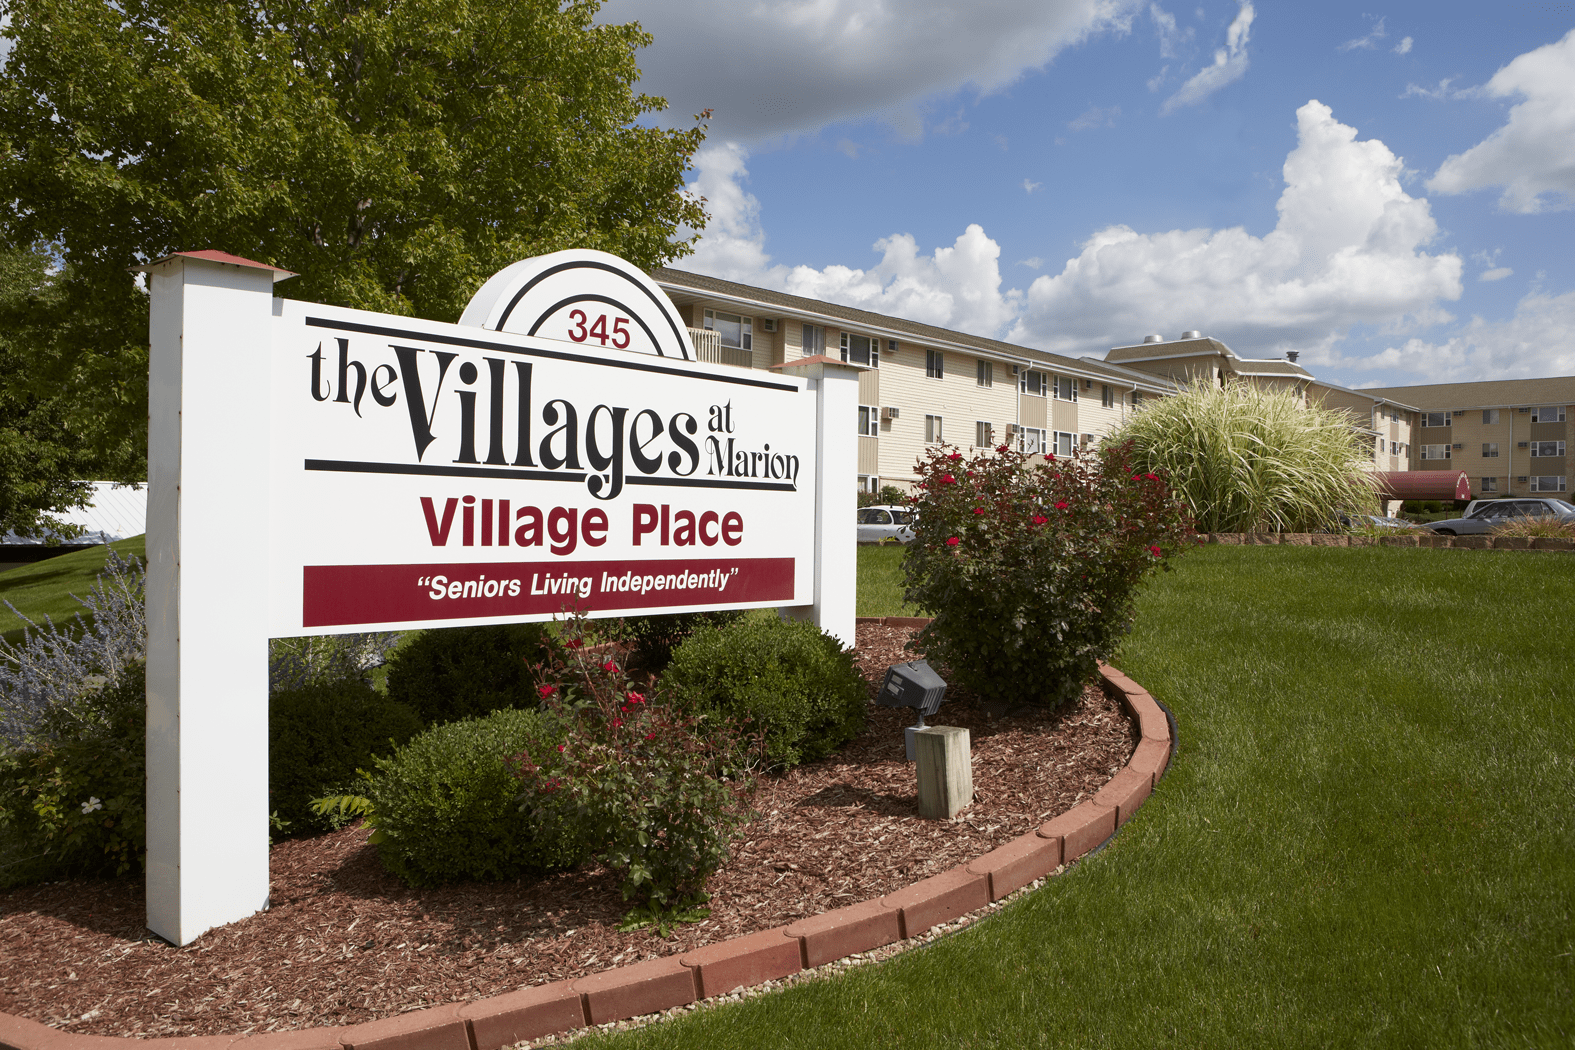 Village Place